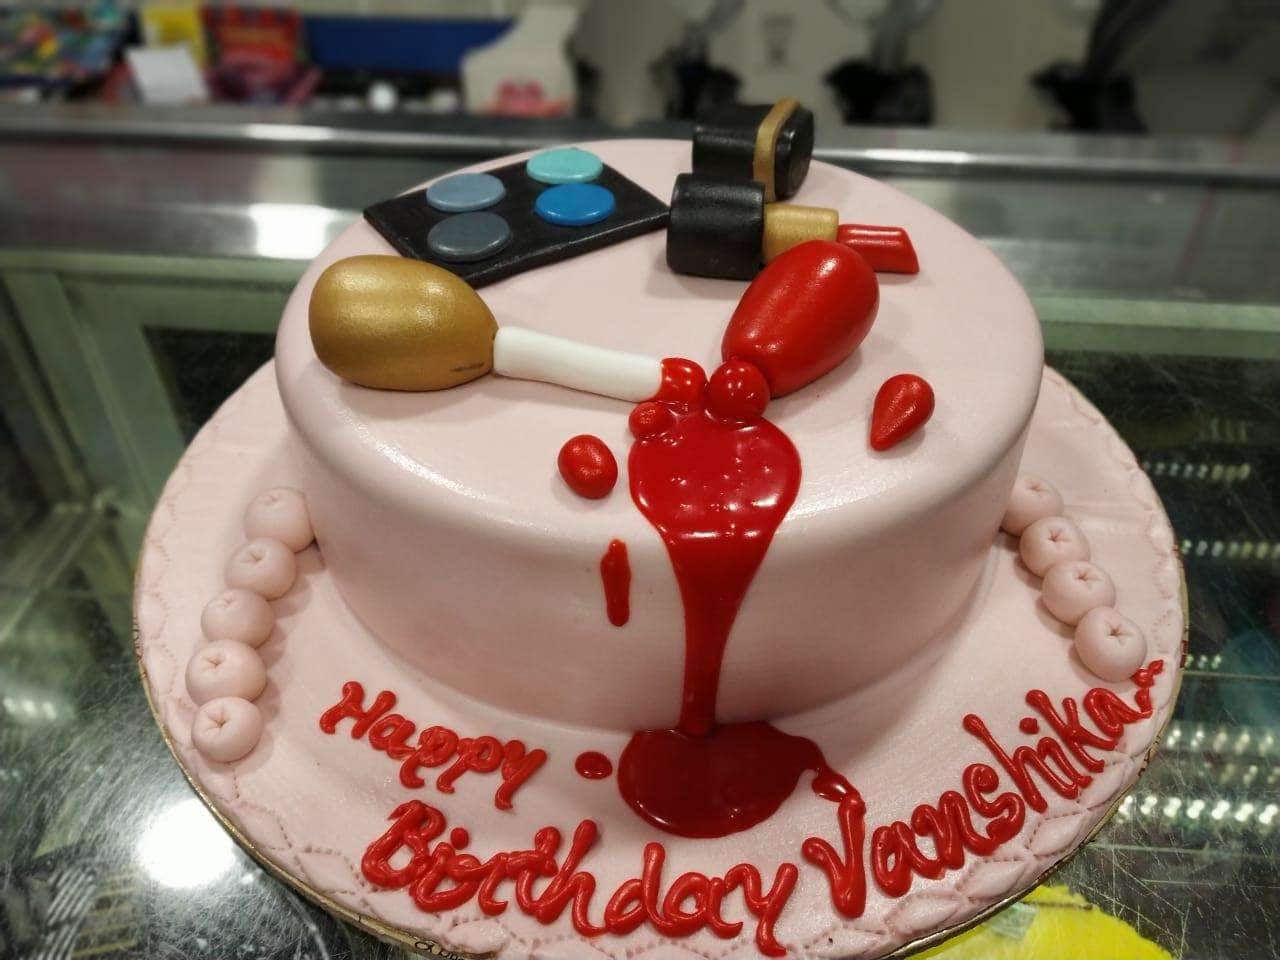 100+ HD Happy Birthday Vanshika Cake Images And Shayari